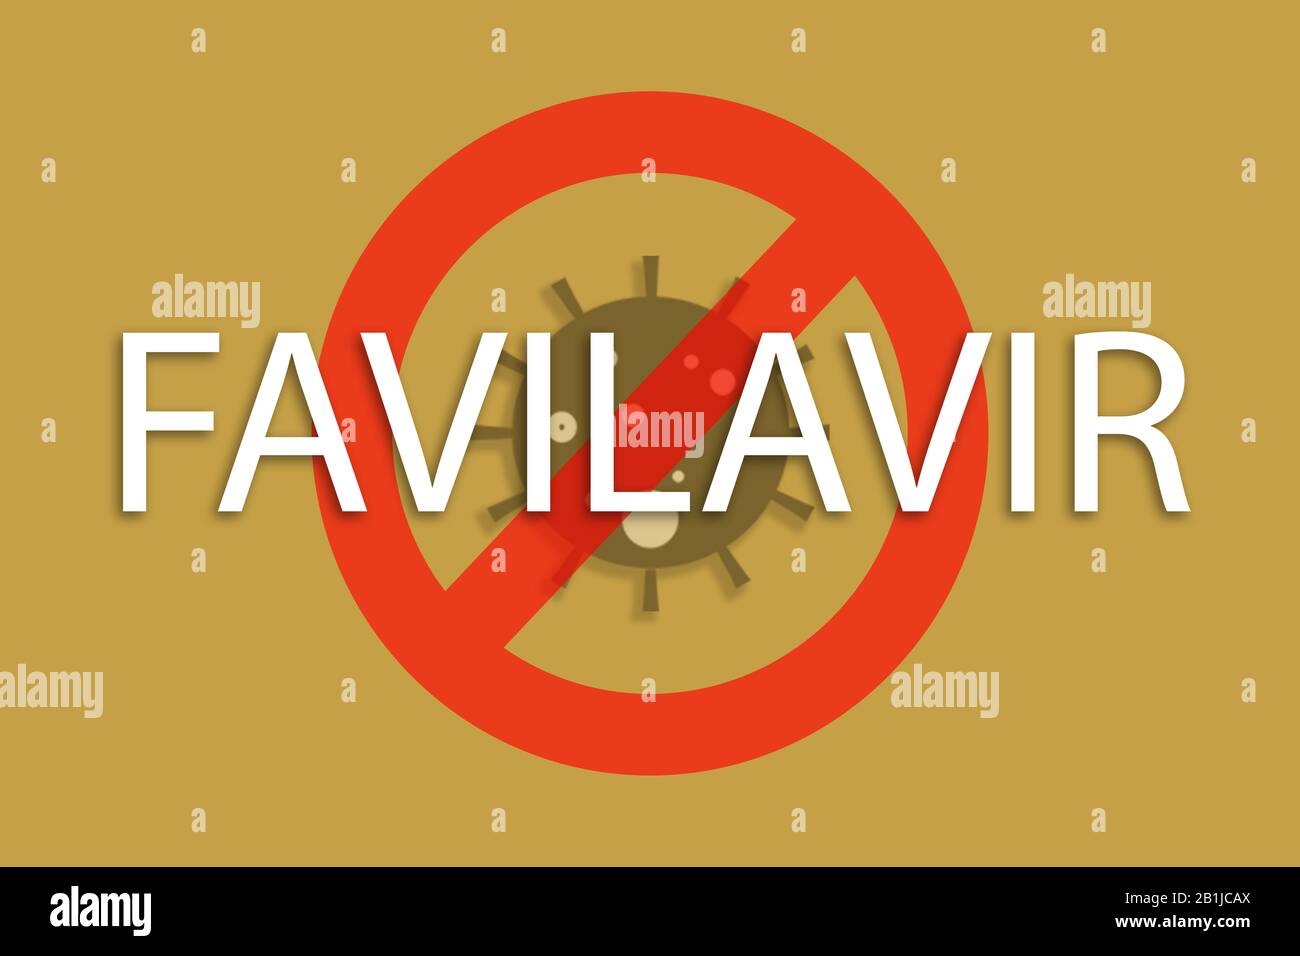 Primer medicamento antiviral Favilavir contra COVID-19, Novel coronavirus o 2019-nCoV , Concepto de cuarentena coronavirus o lucha contra covid-19 Foto de stock